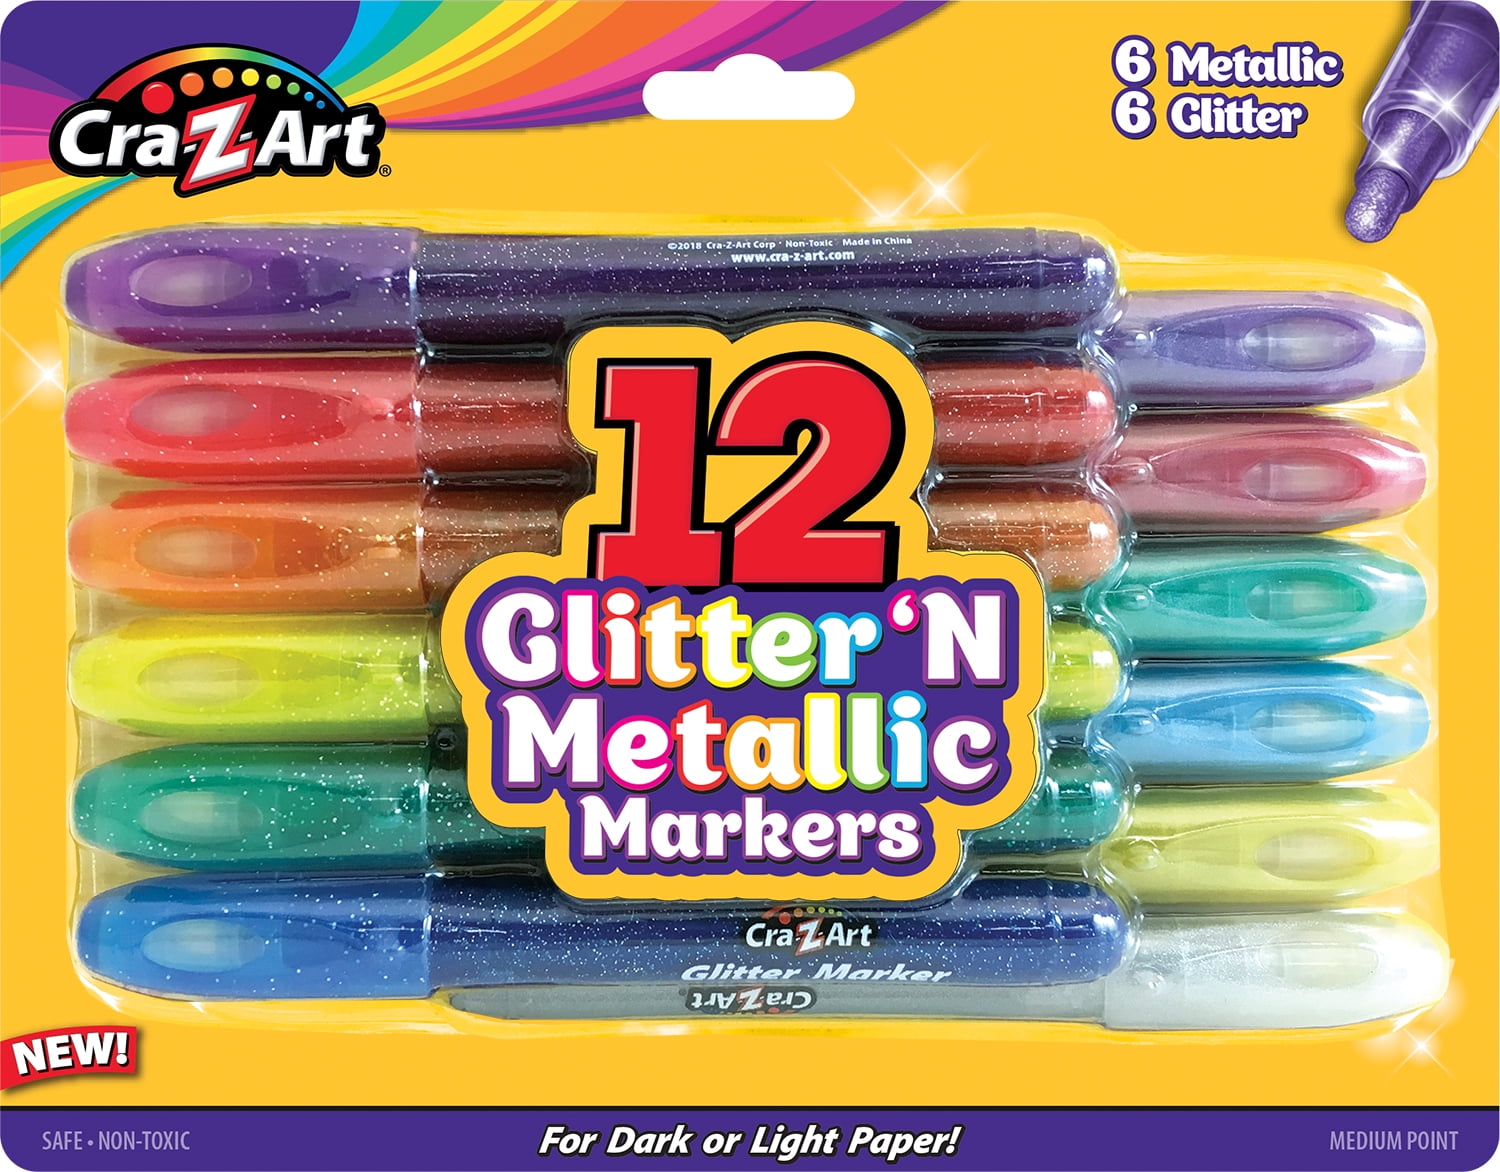 Cra-Z-Art 12 Glitter 'N Metallic. apple pencil on ipad 5th generation....